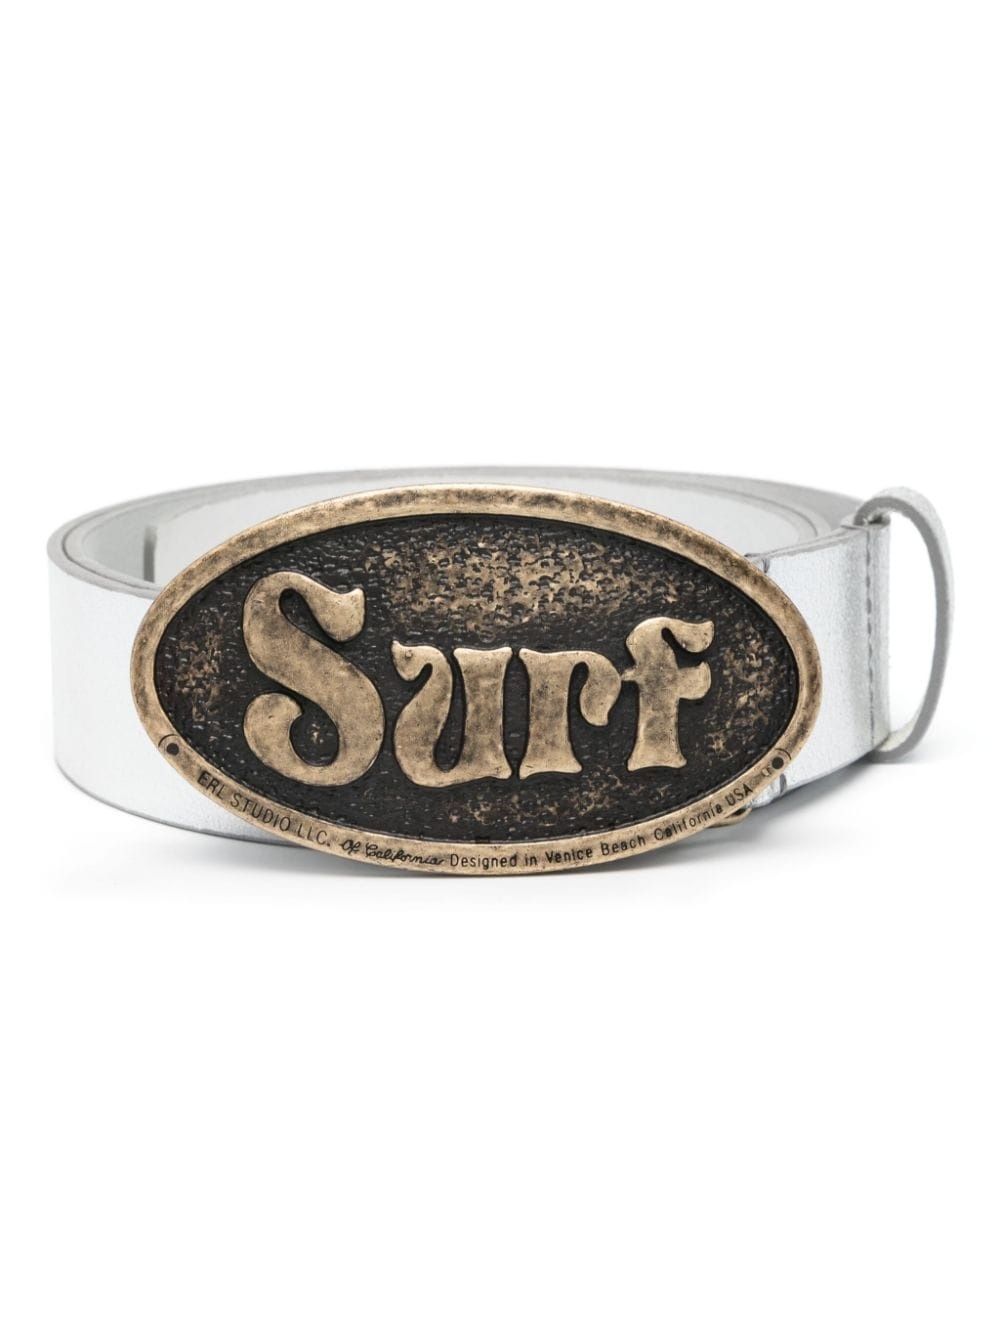 Surf-buckle belt - 1